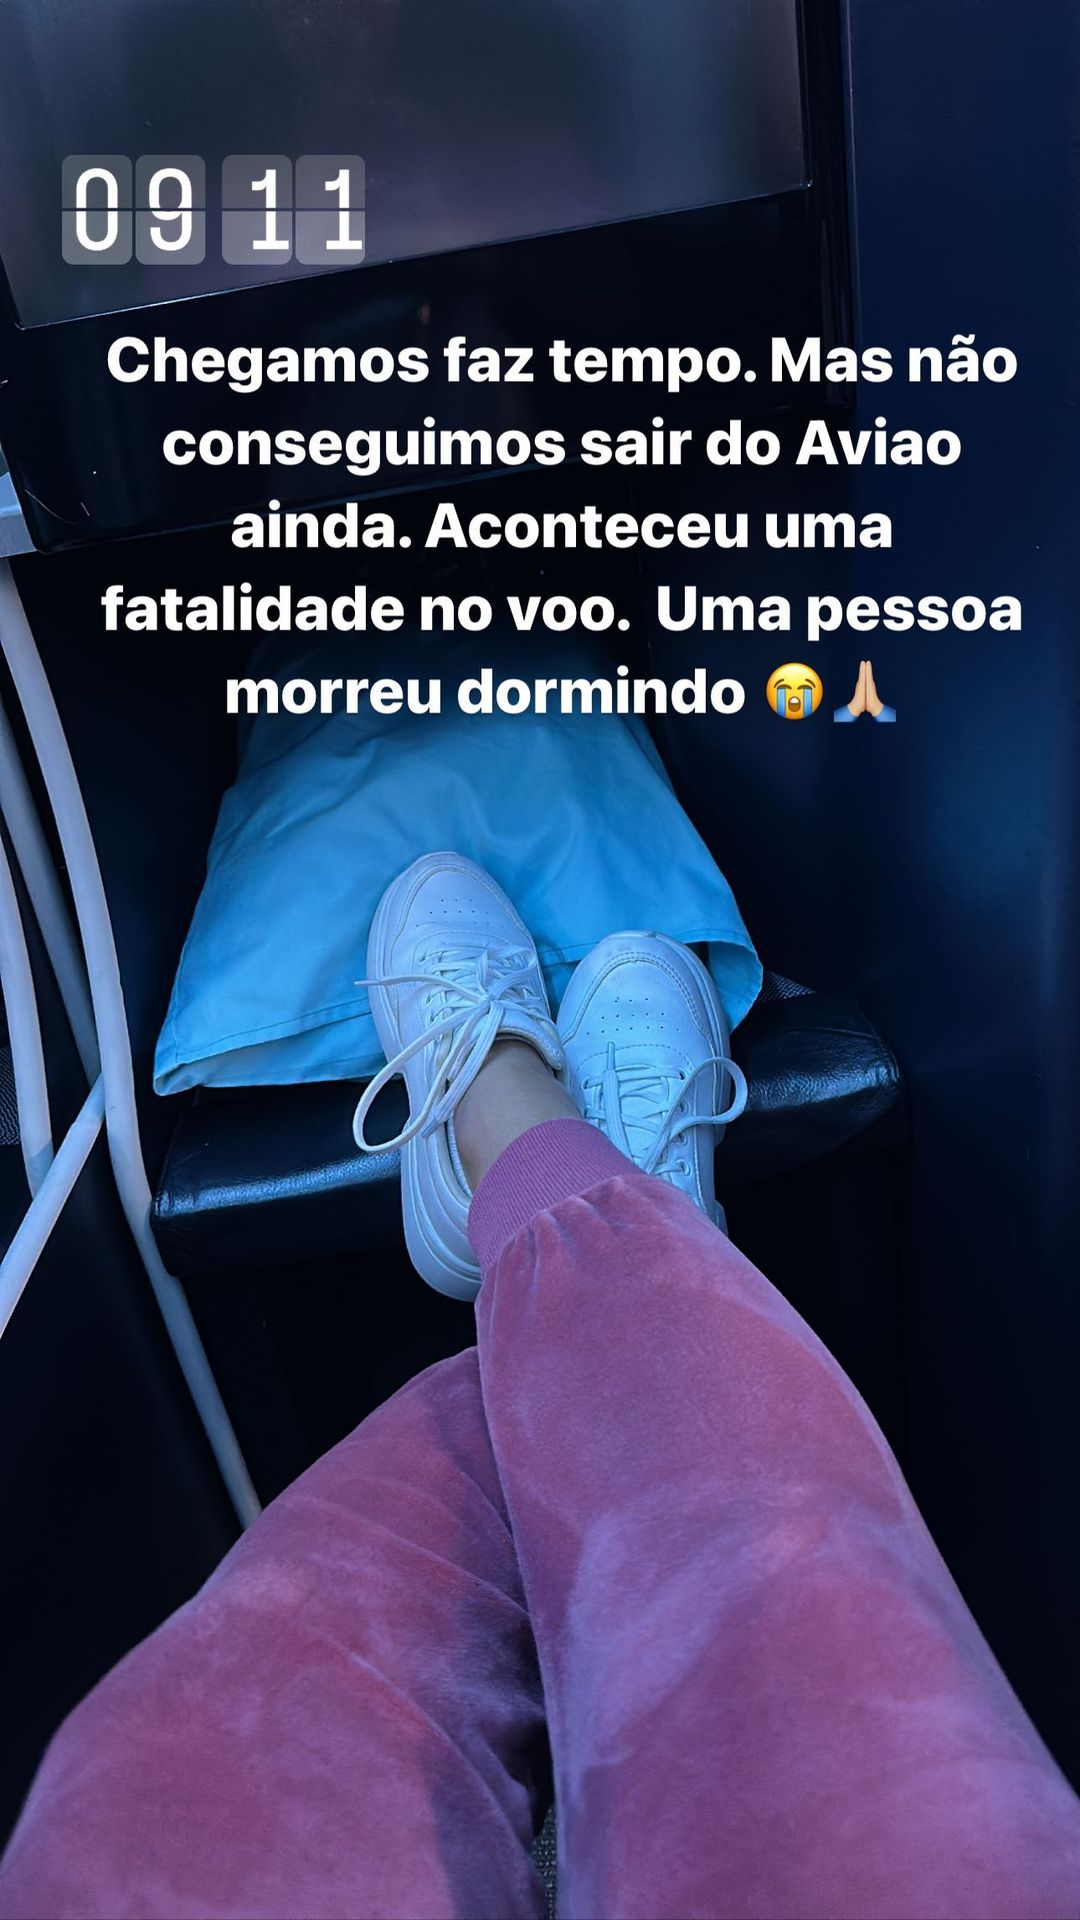 Graciele Lacerda avisou nos Stories que uma pessoa morreu durante um voo que ela e Zezé Di Camargo estavam.. Foto: Reprodução/Instagram @gracielelacerdaoficial 31.12.2022